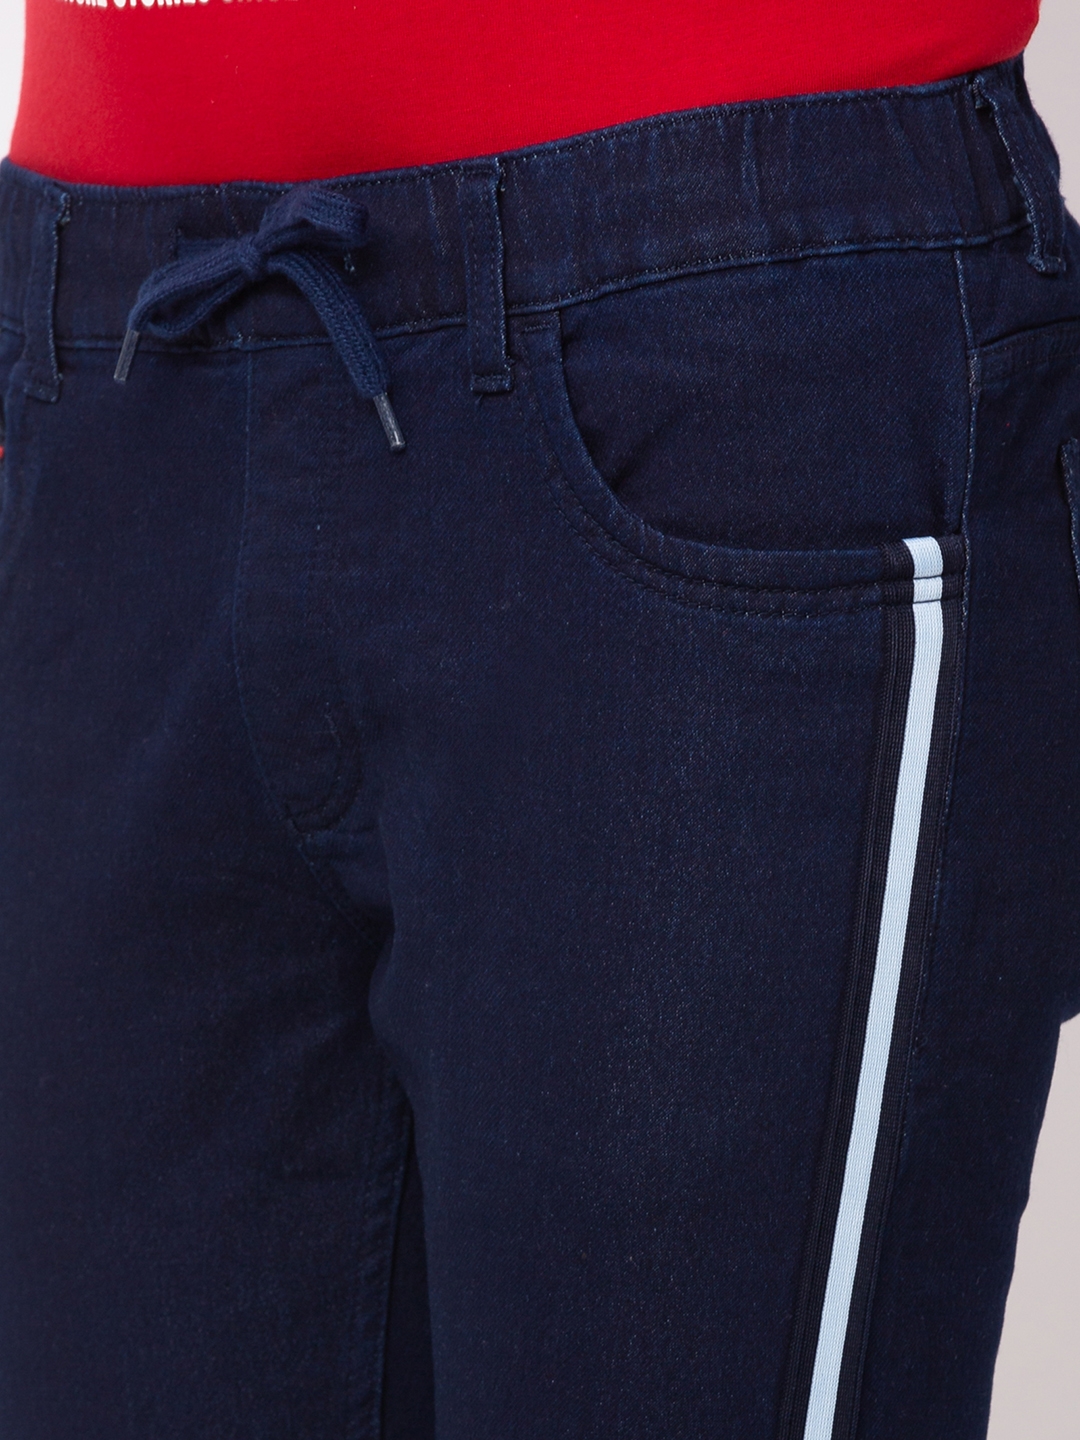 globus | Men's Blue Polycotton Striped Joggers Jeans 3